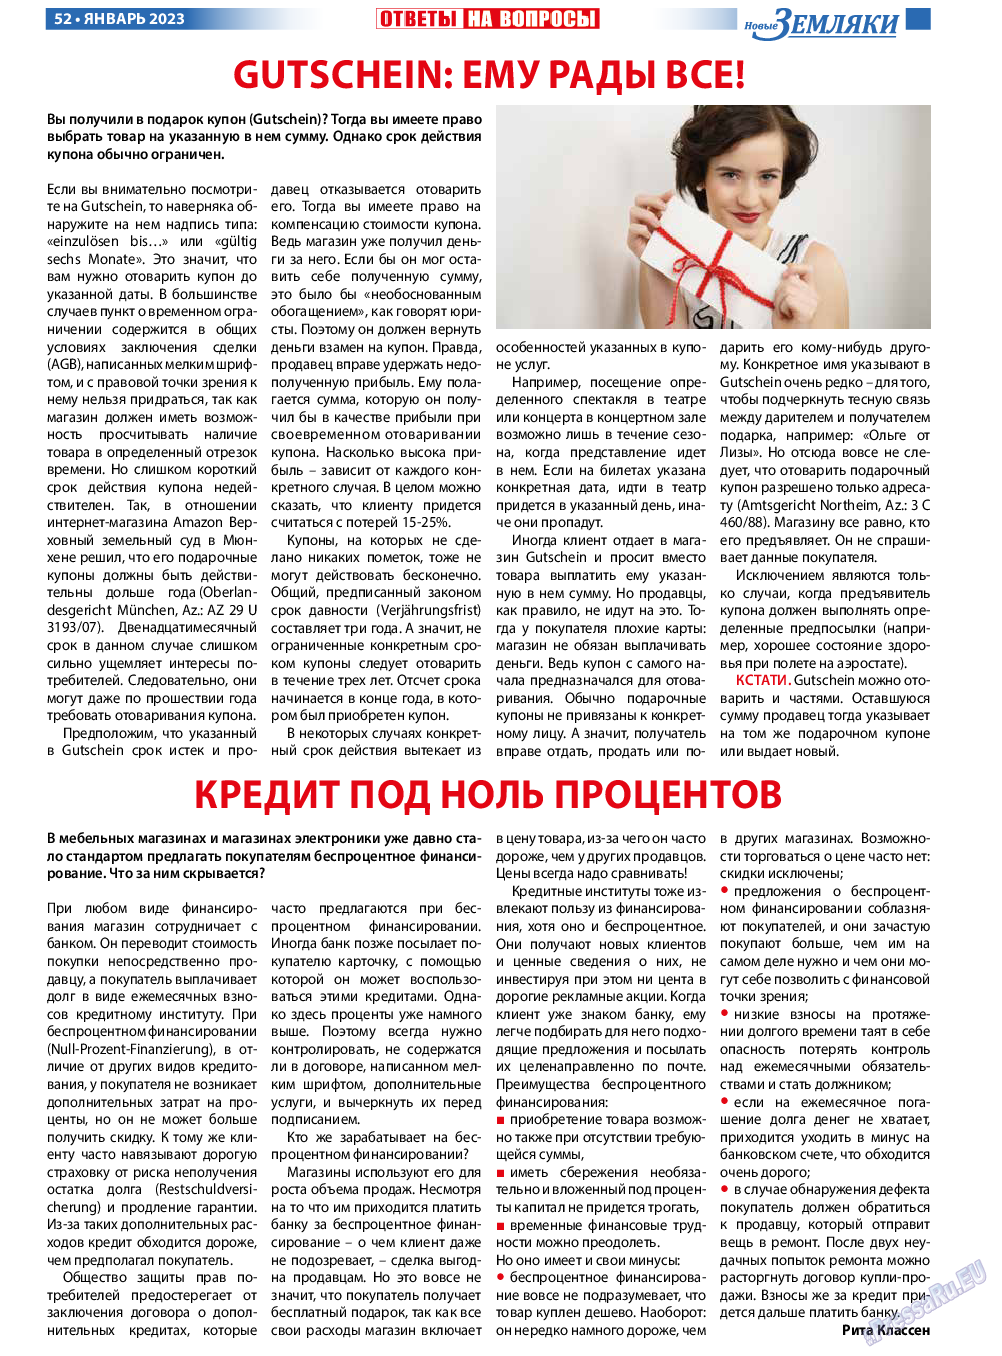 Новые Земляки, газета. 2023 №1 стр.52